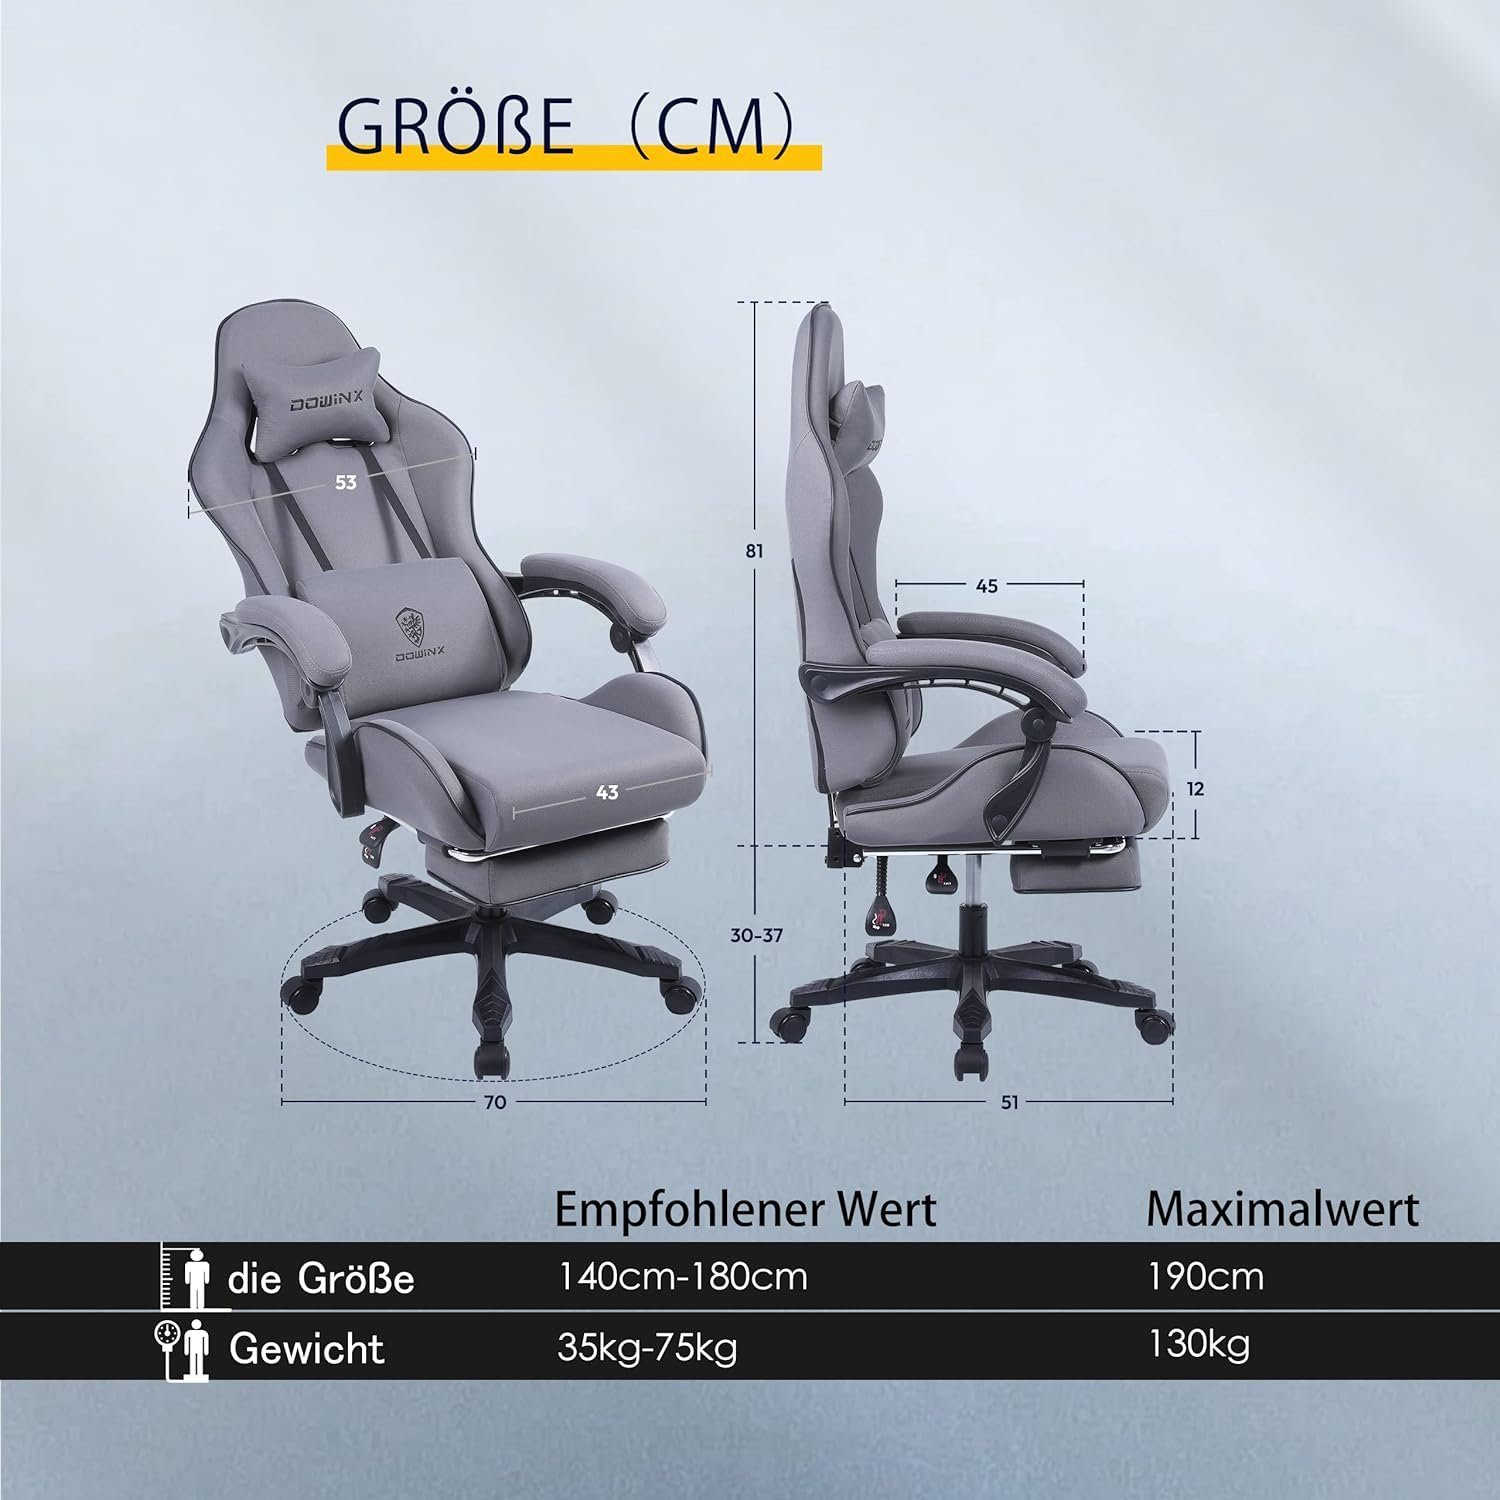 Dowinx Gaming-Stuhl (Ergonomischer Verstellbarer Ergonomischer Burostuhl,Schreibtischstuhl Taschenfederkissen Mit Sitz), Fußstütze Sessel mit Stuhl Gaming